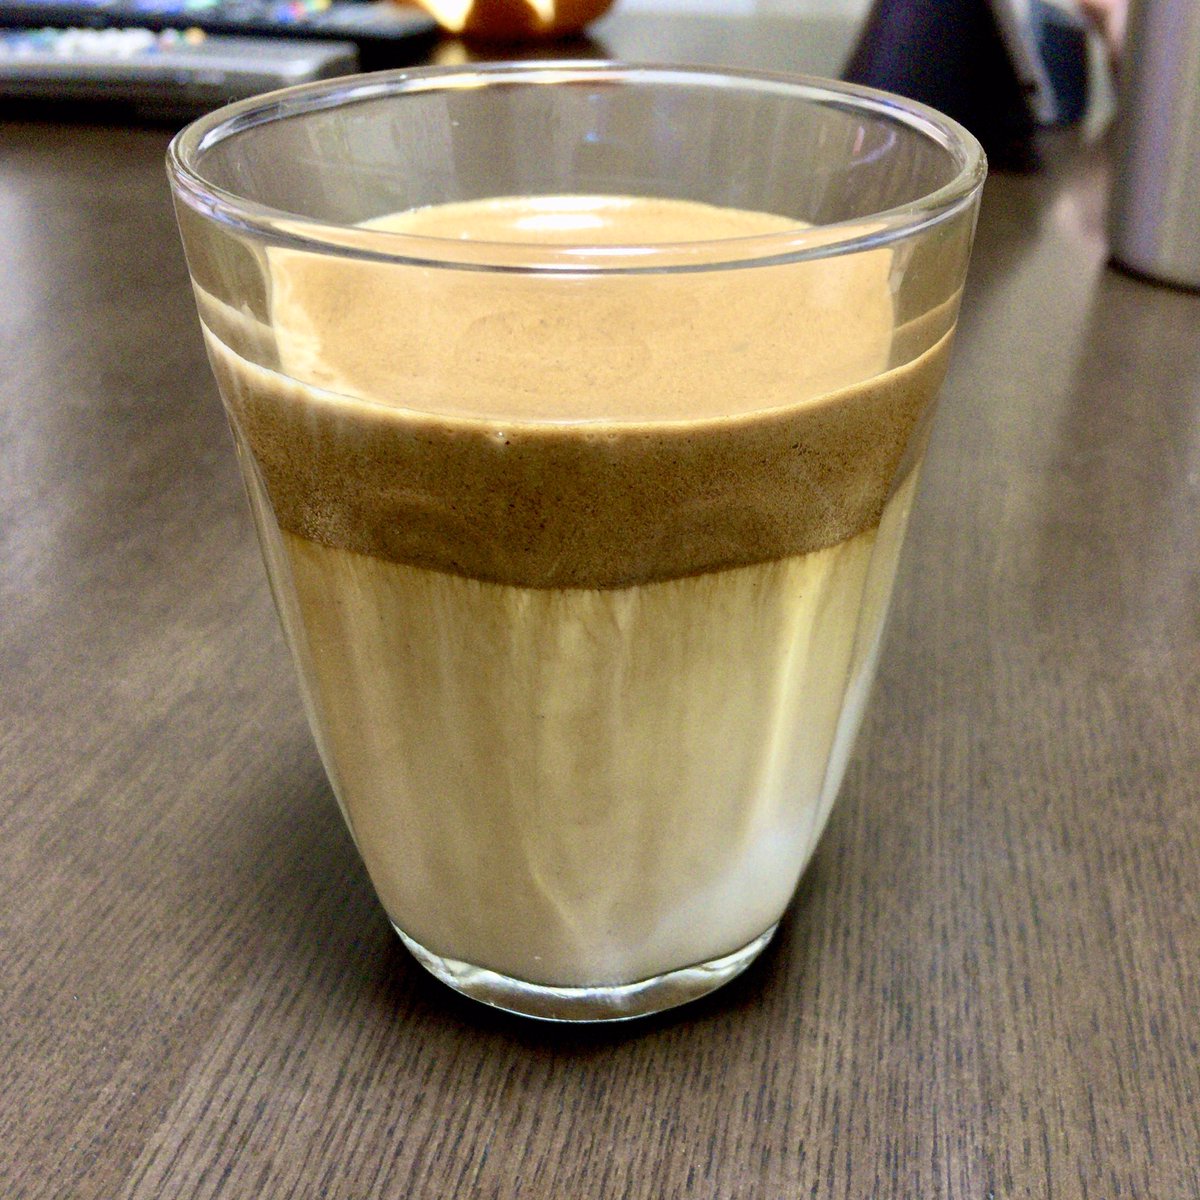 Ayucow 妻が 牛乳に激甘コーヒー泡を載せた これから流行るらしい 飲み物作ってくれた カプチーノの逆 泡立て足りず 牛乳にコーヒー溶け出してる ダルゴナコーヒー